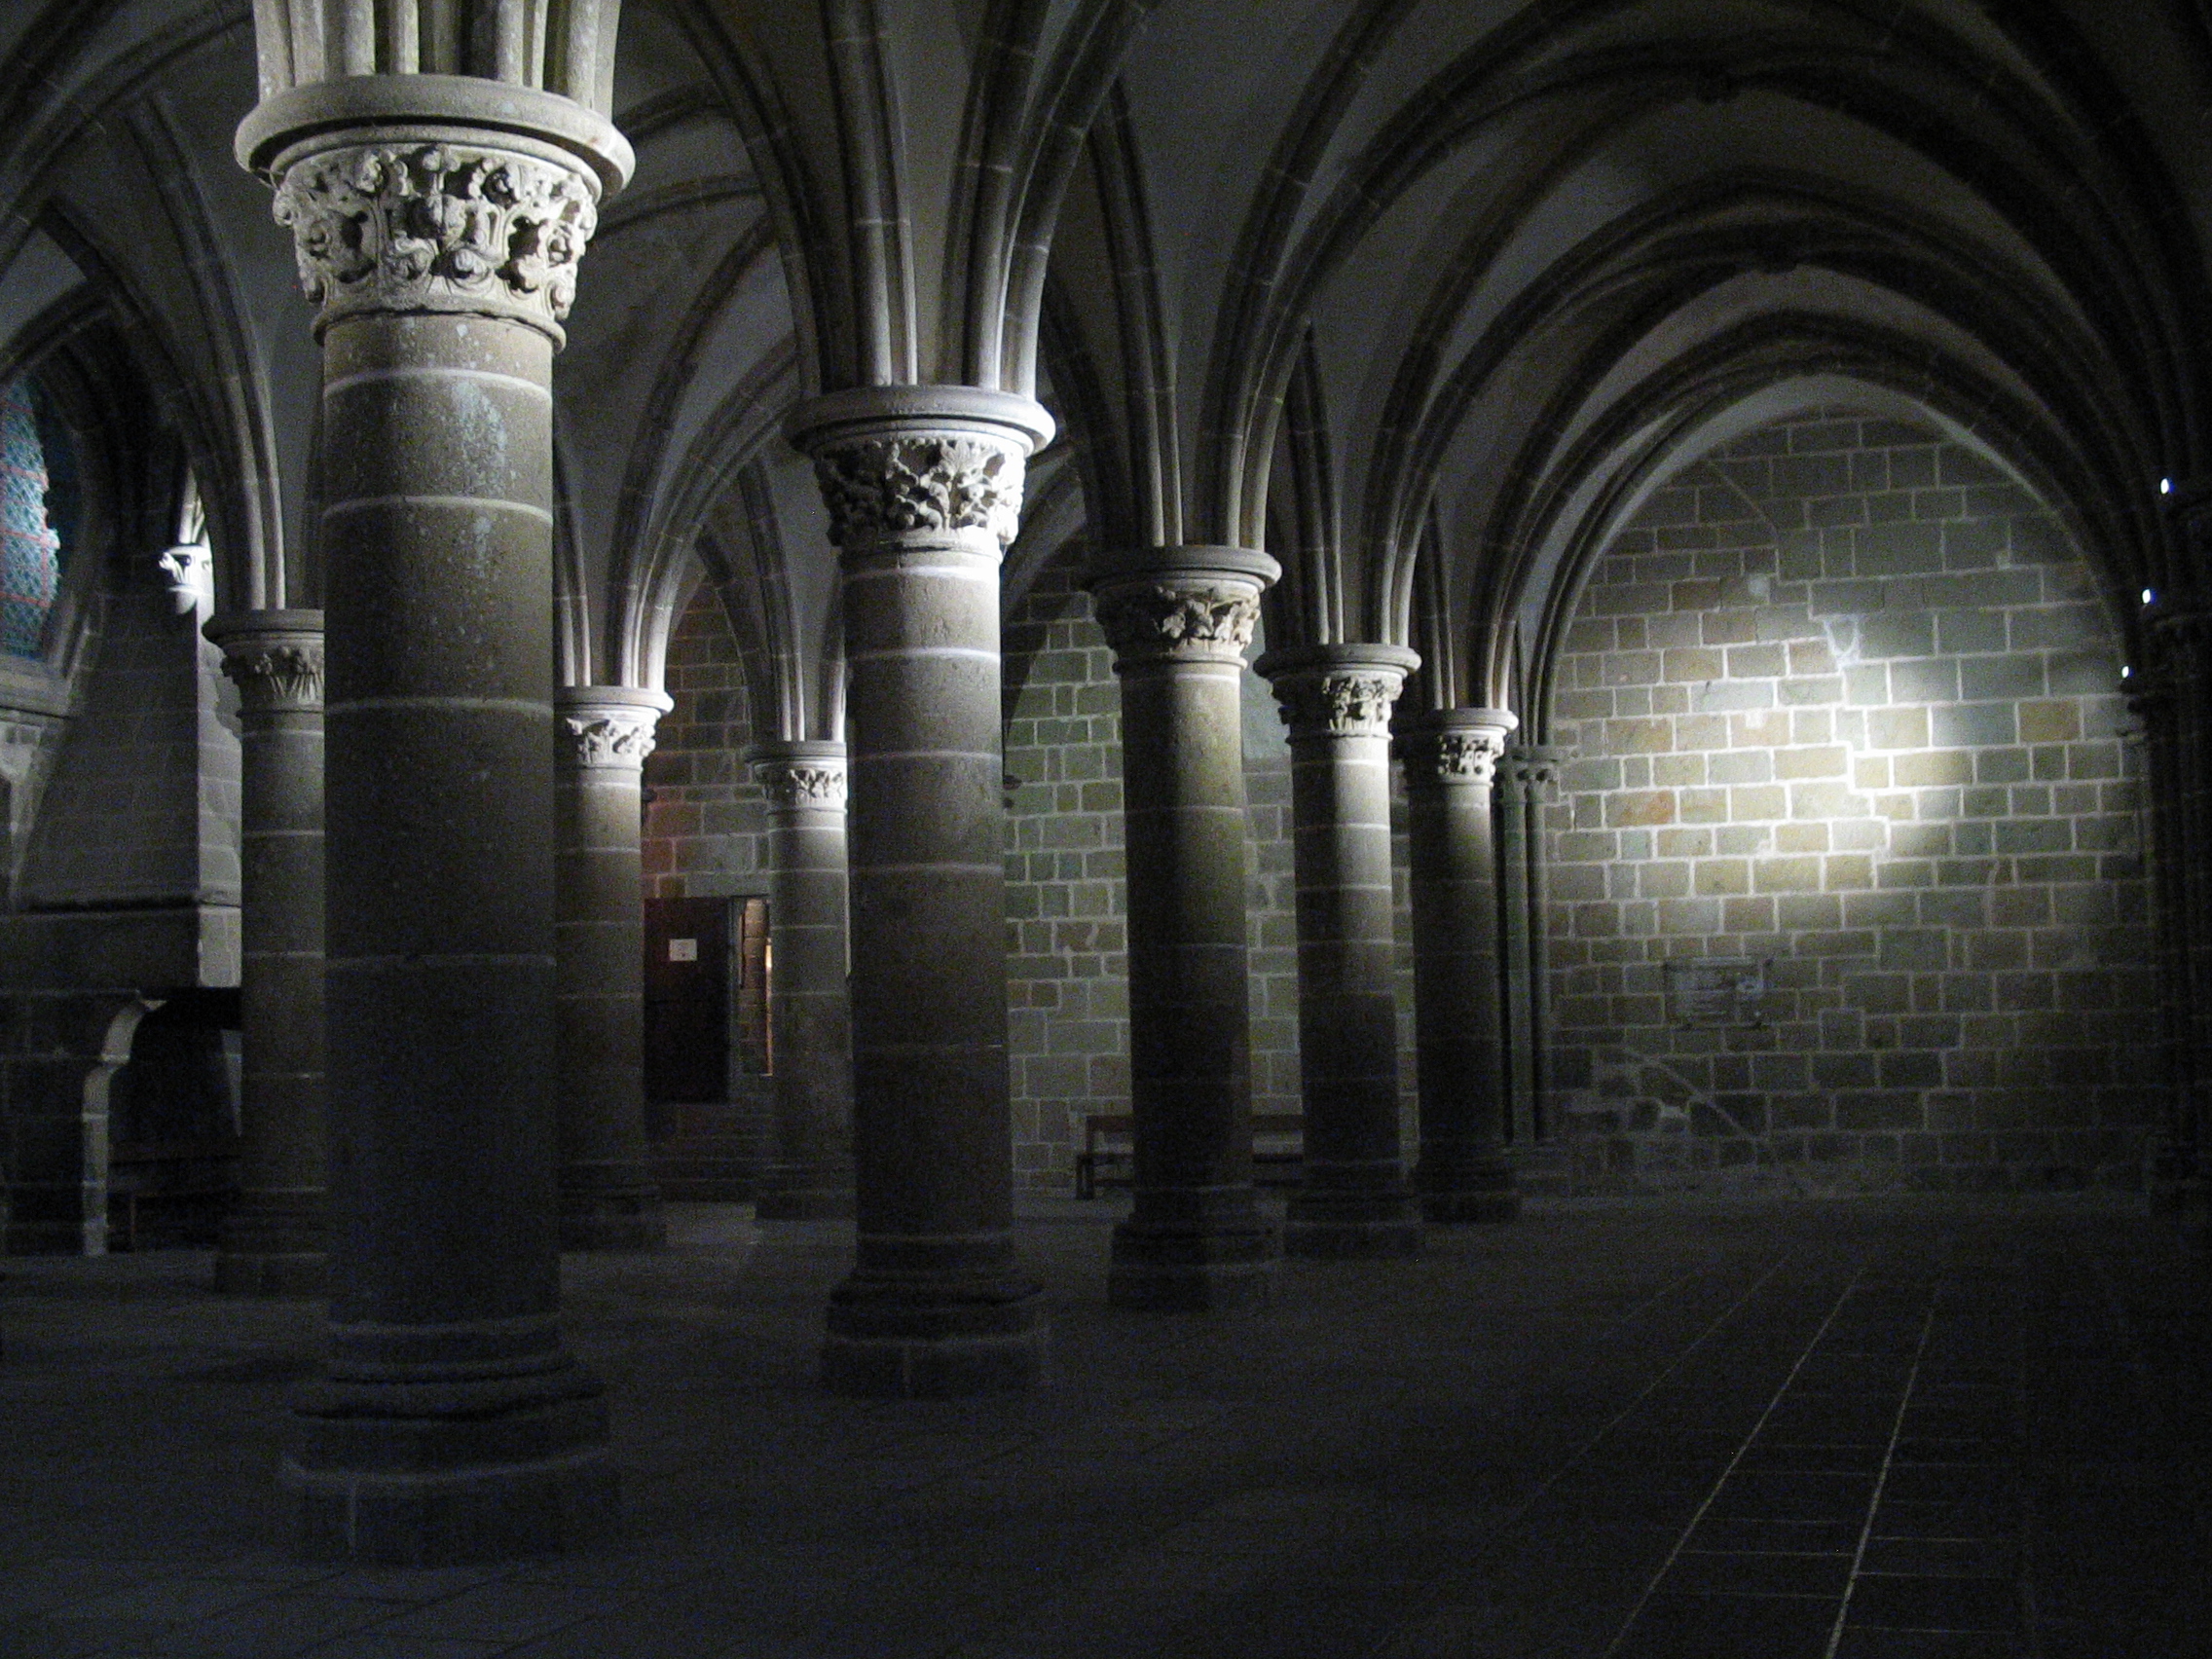 geoff_vane church crypt dark cellar column columns stone underground